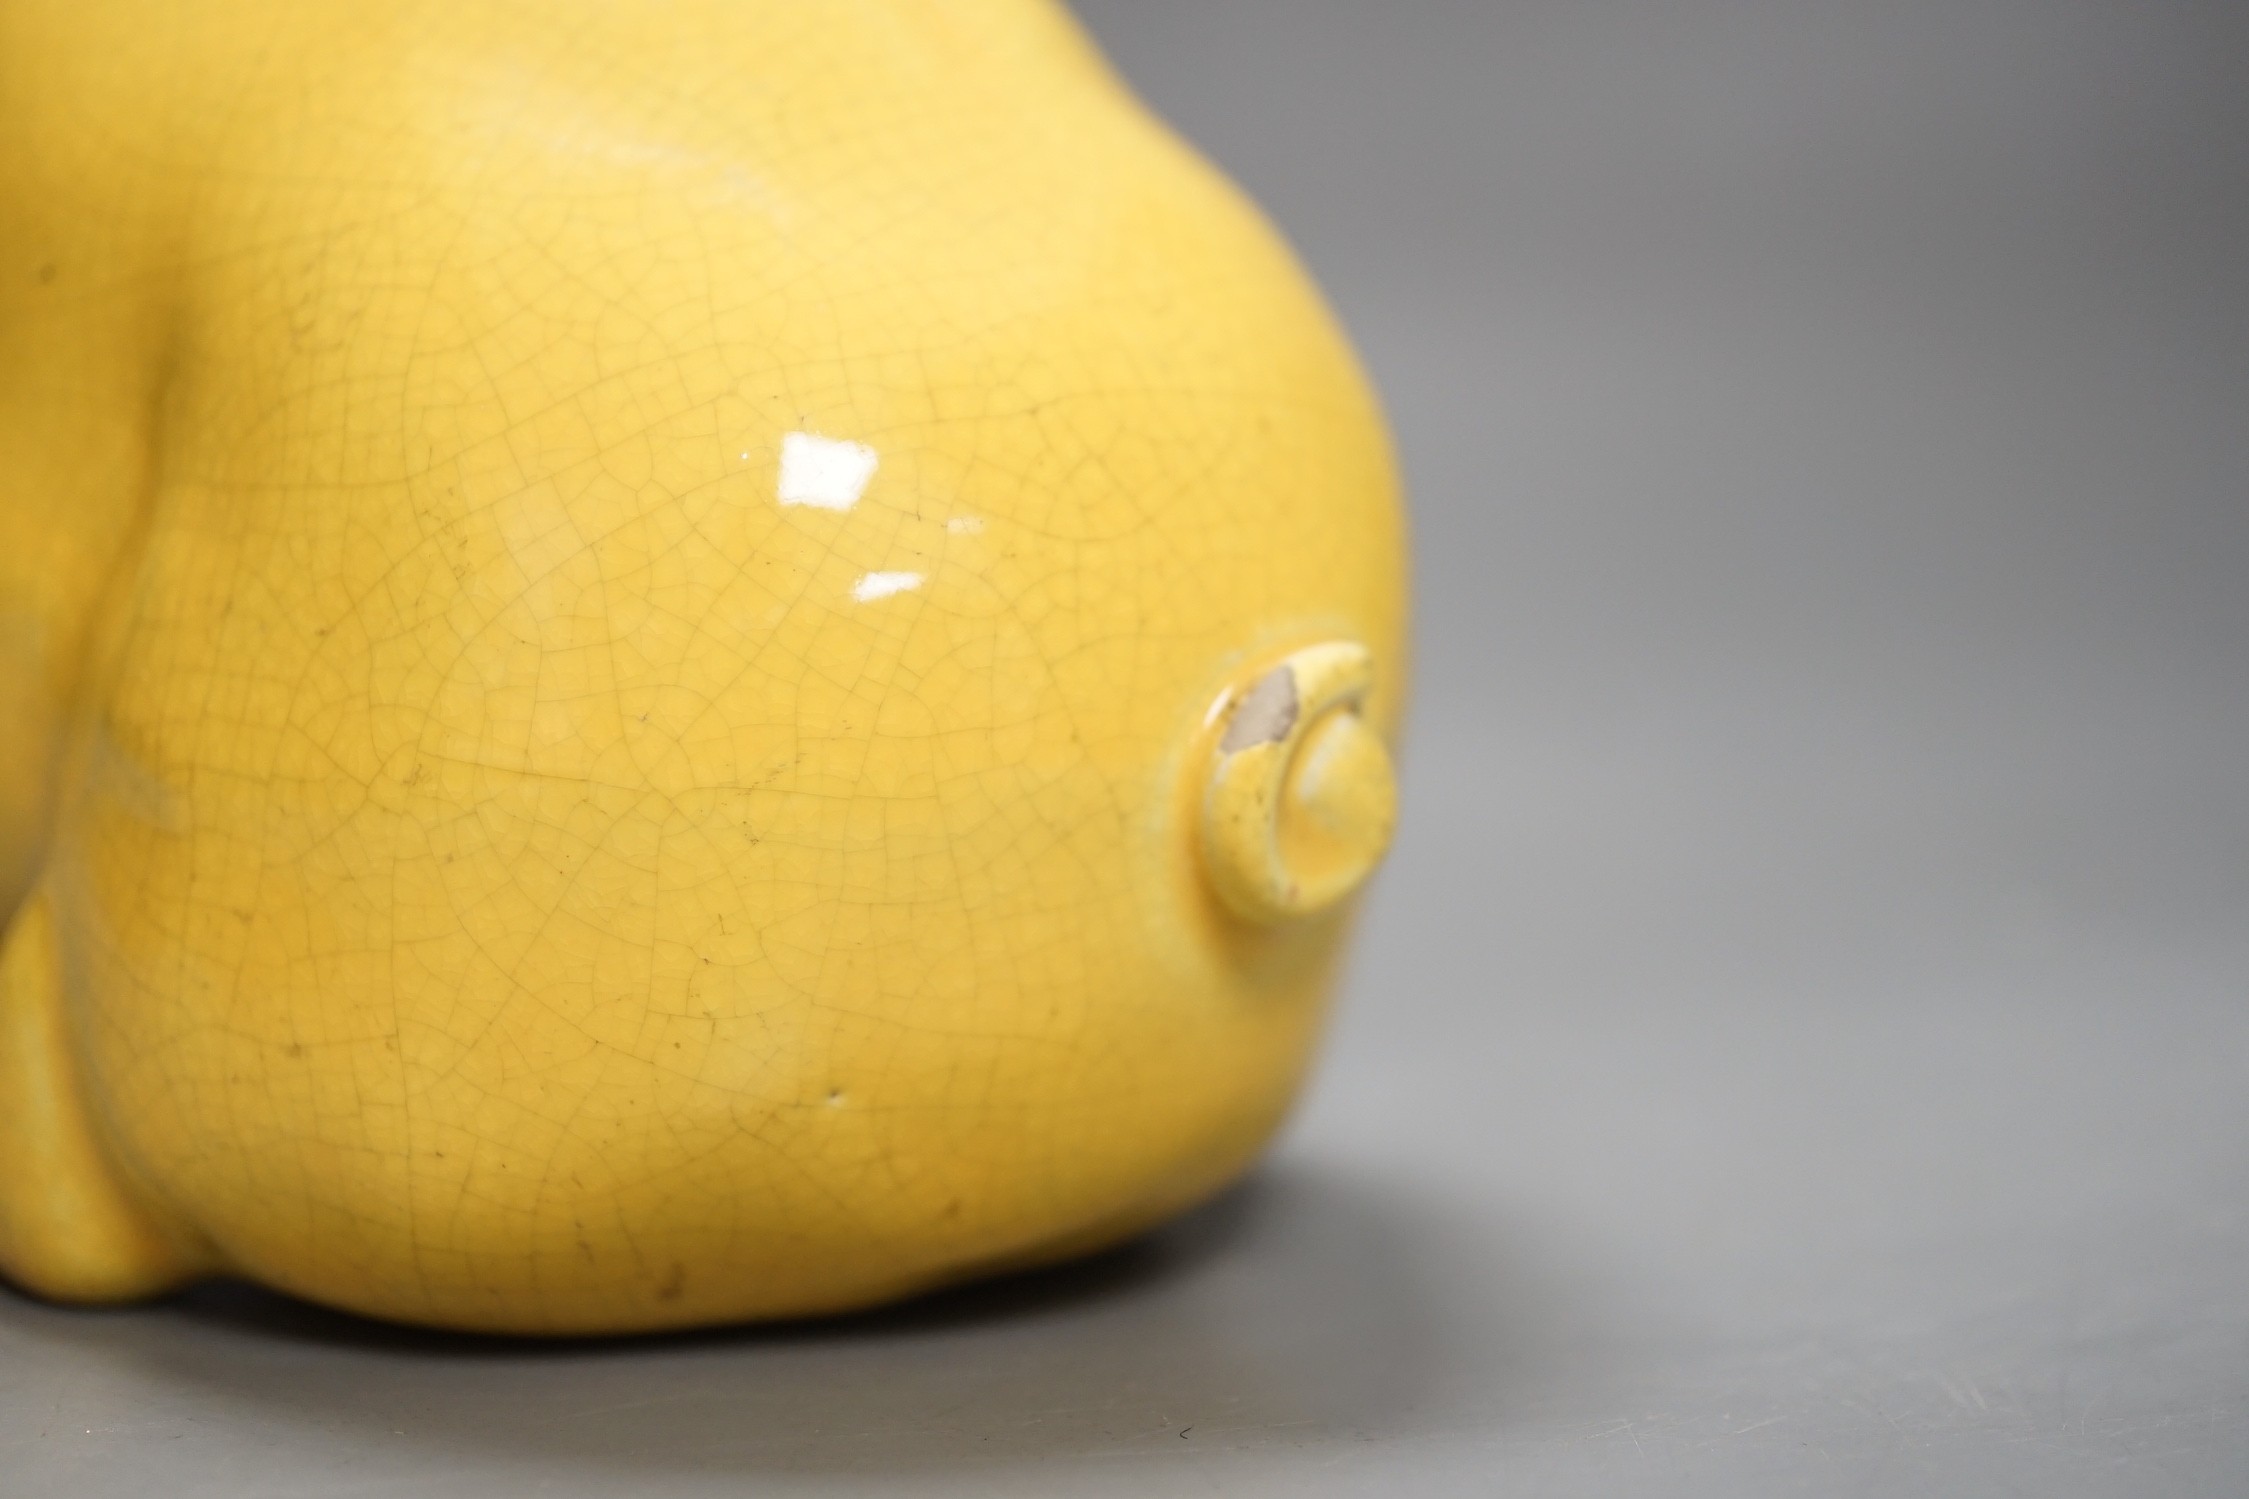 A Wemyss ware yellow glazed pig, 17cms long